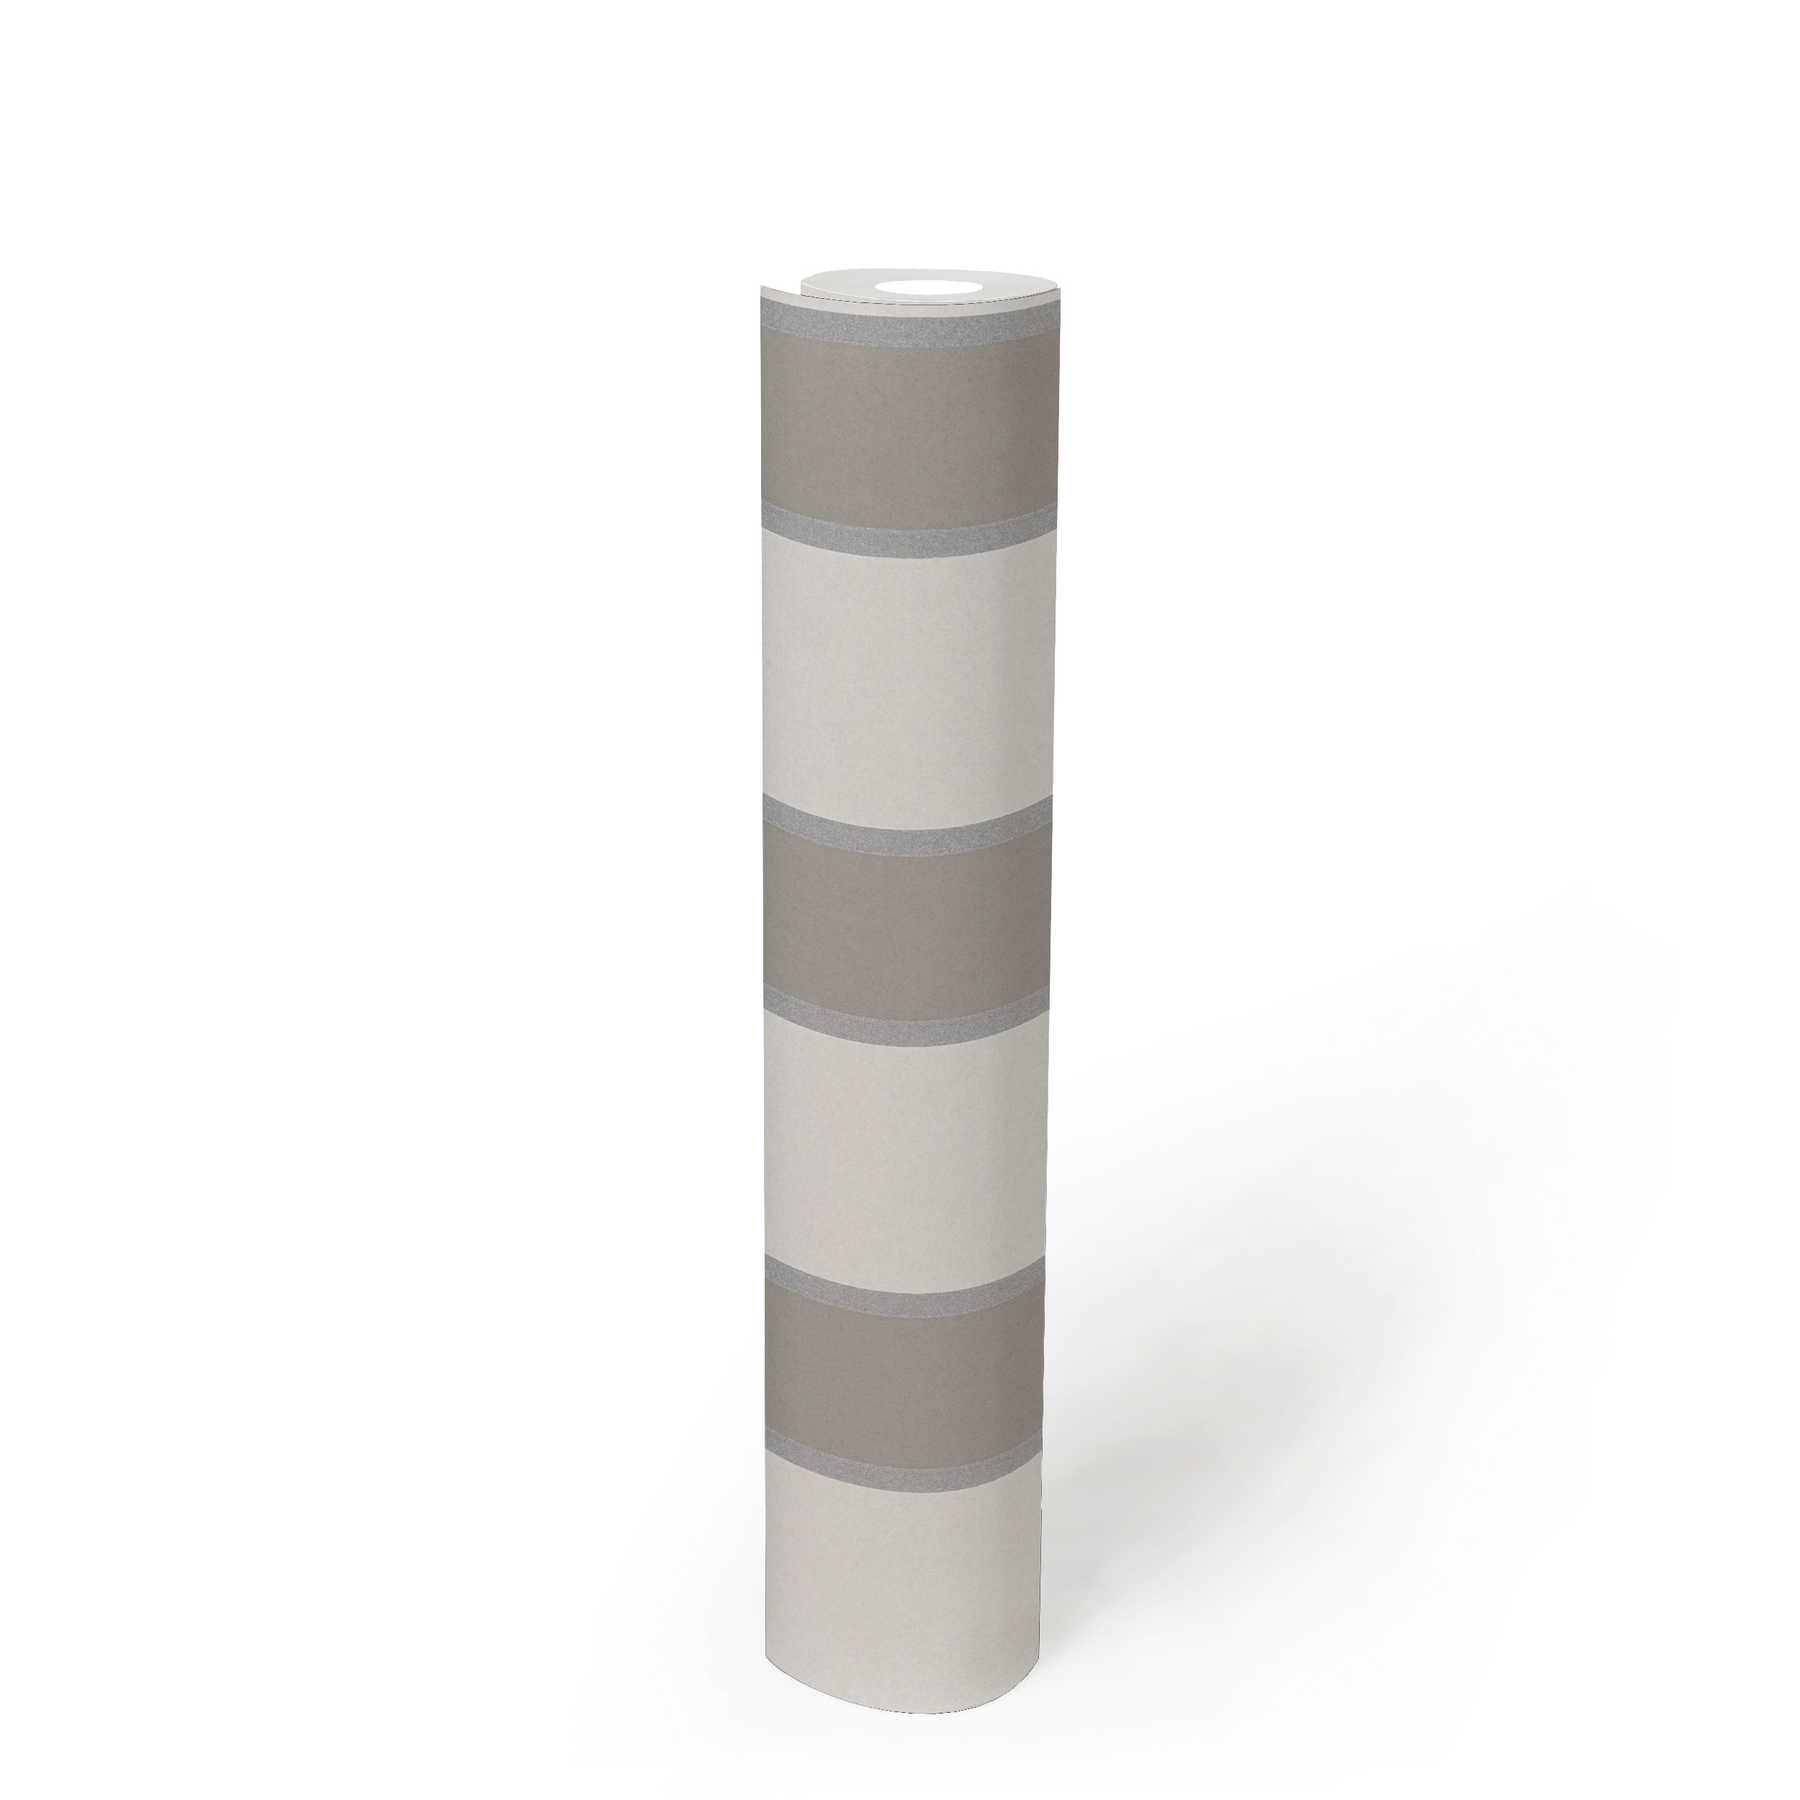             Non-woven wallpaper stripes with matt & metallic effect - beige
        